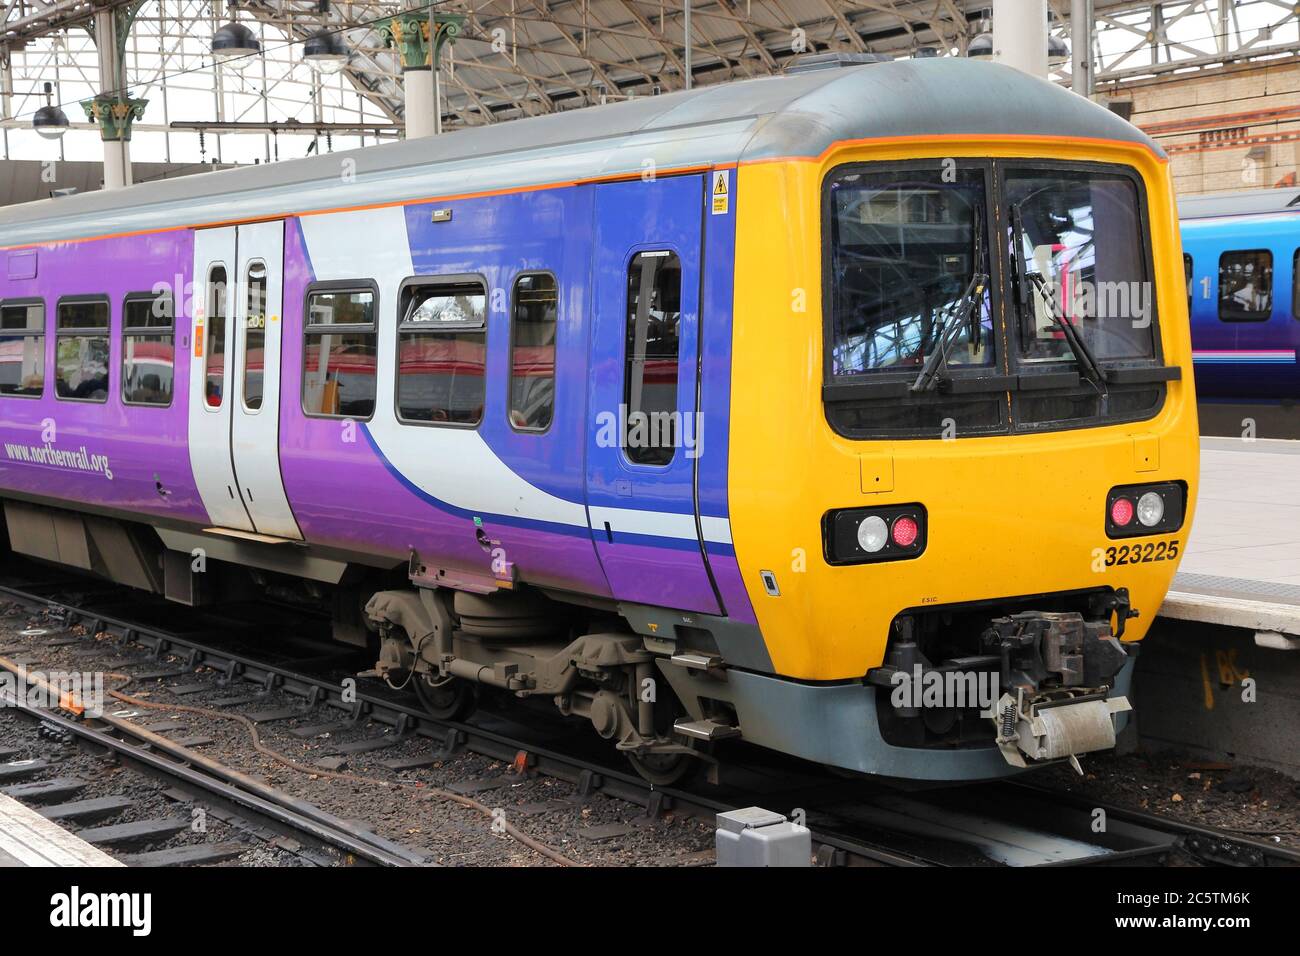 MANCHESTER, Großbritannien - 23. APRIL 2013: Northern Rail Zug in Manchester, Großbritannien. NR ist Teil des Joint Ventures Serco-Abellio. NR hat Flotte von 313 Zügen und Anruf Stockfoto